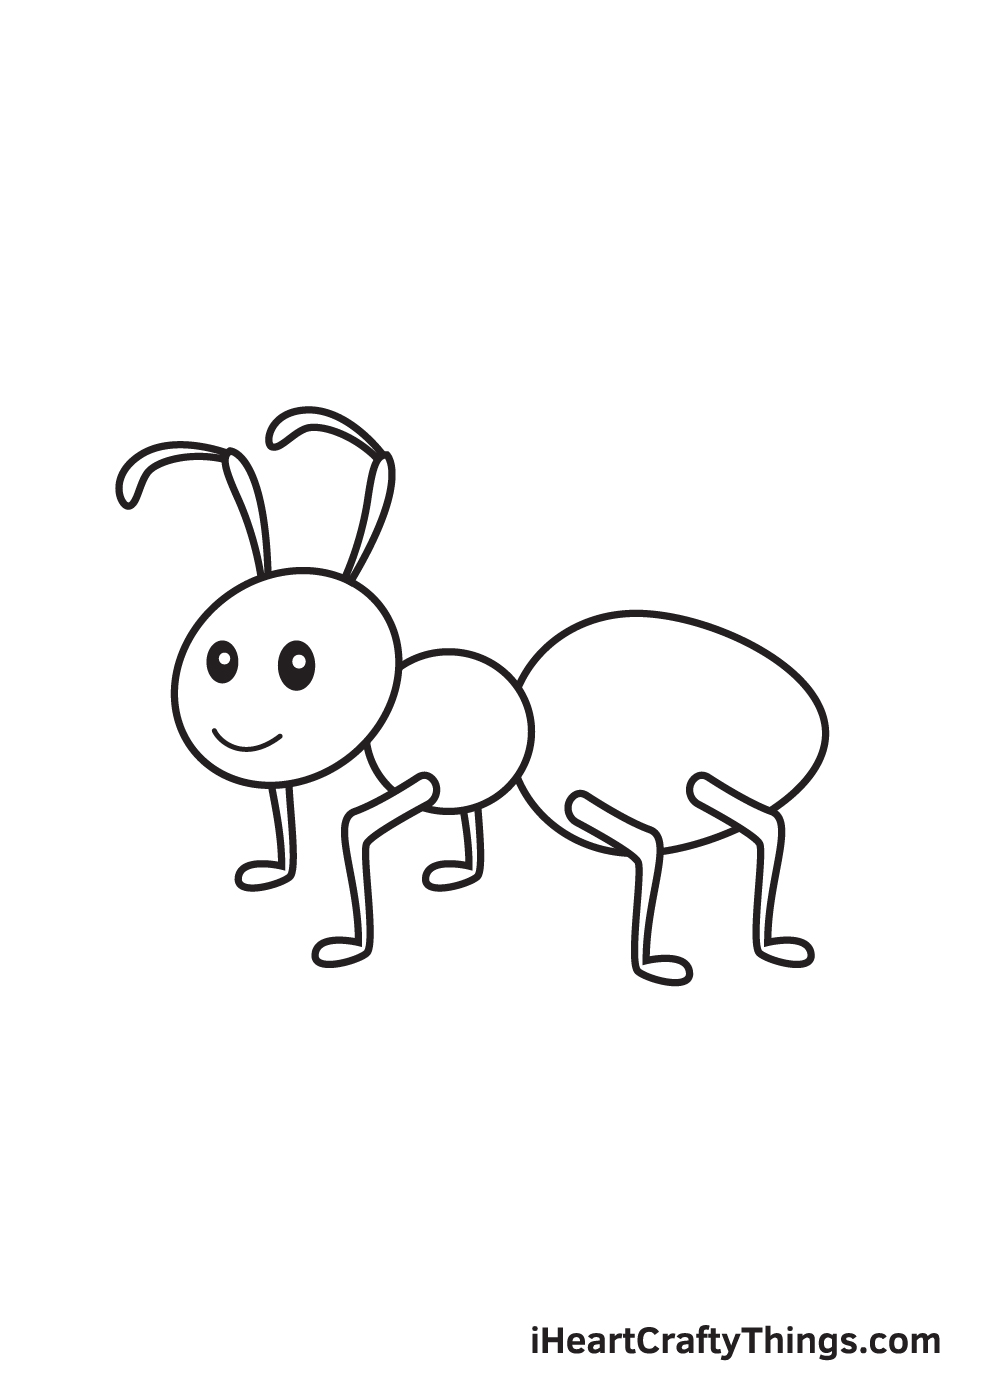 Ant DRAWING – STEP 9 - Hướng dẫn chi tiết cách vẽ con kiến đơn giản với 9 bước cơ bản